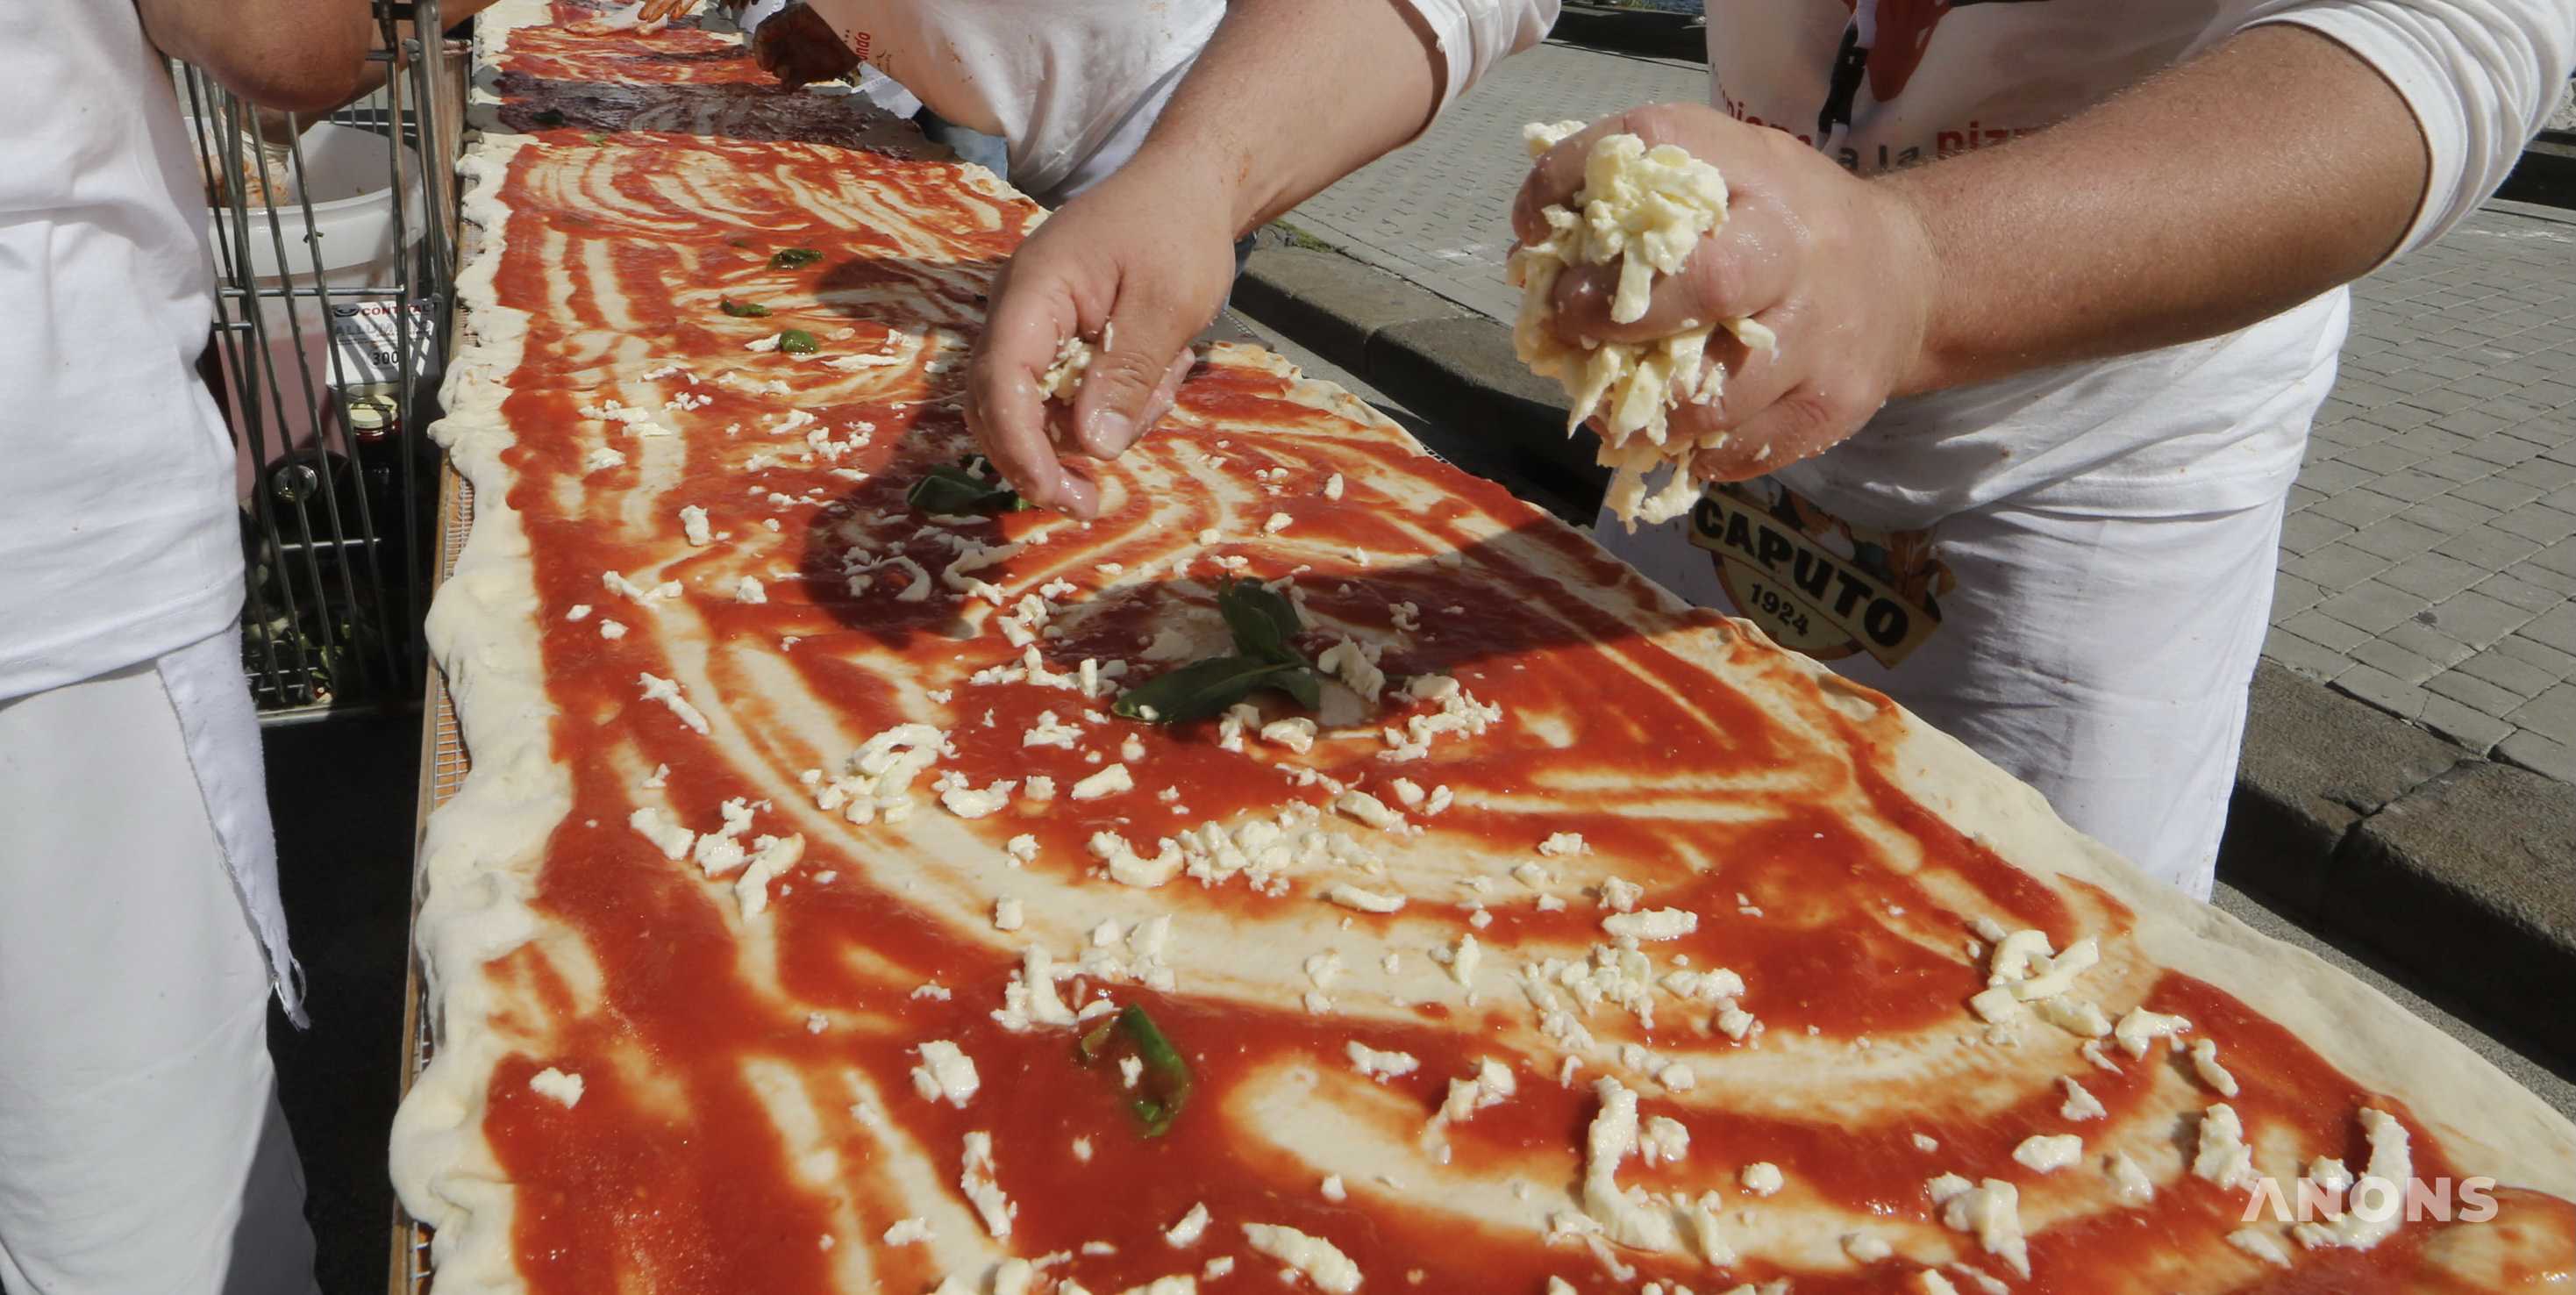 В Ташкенте приготовят самую большую пиццу в Азии